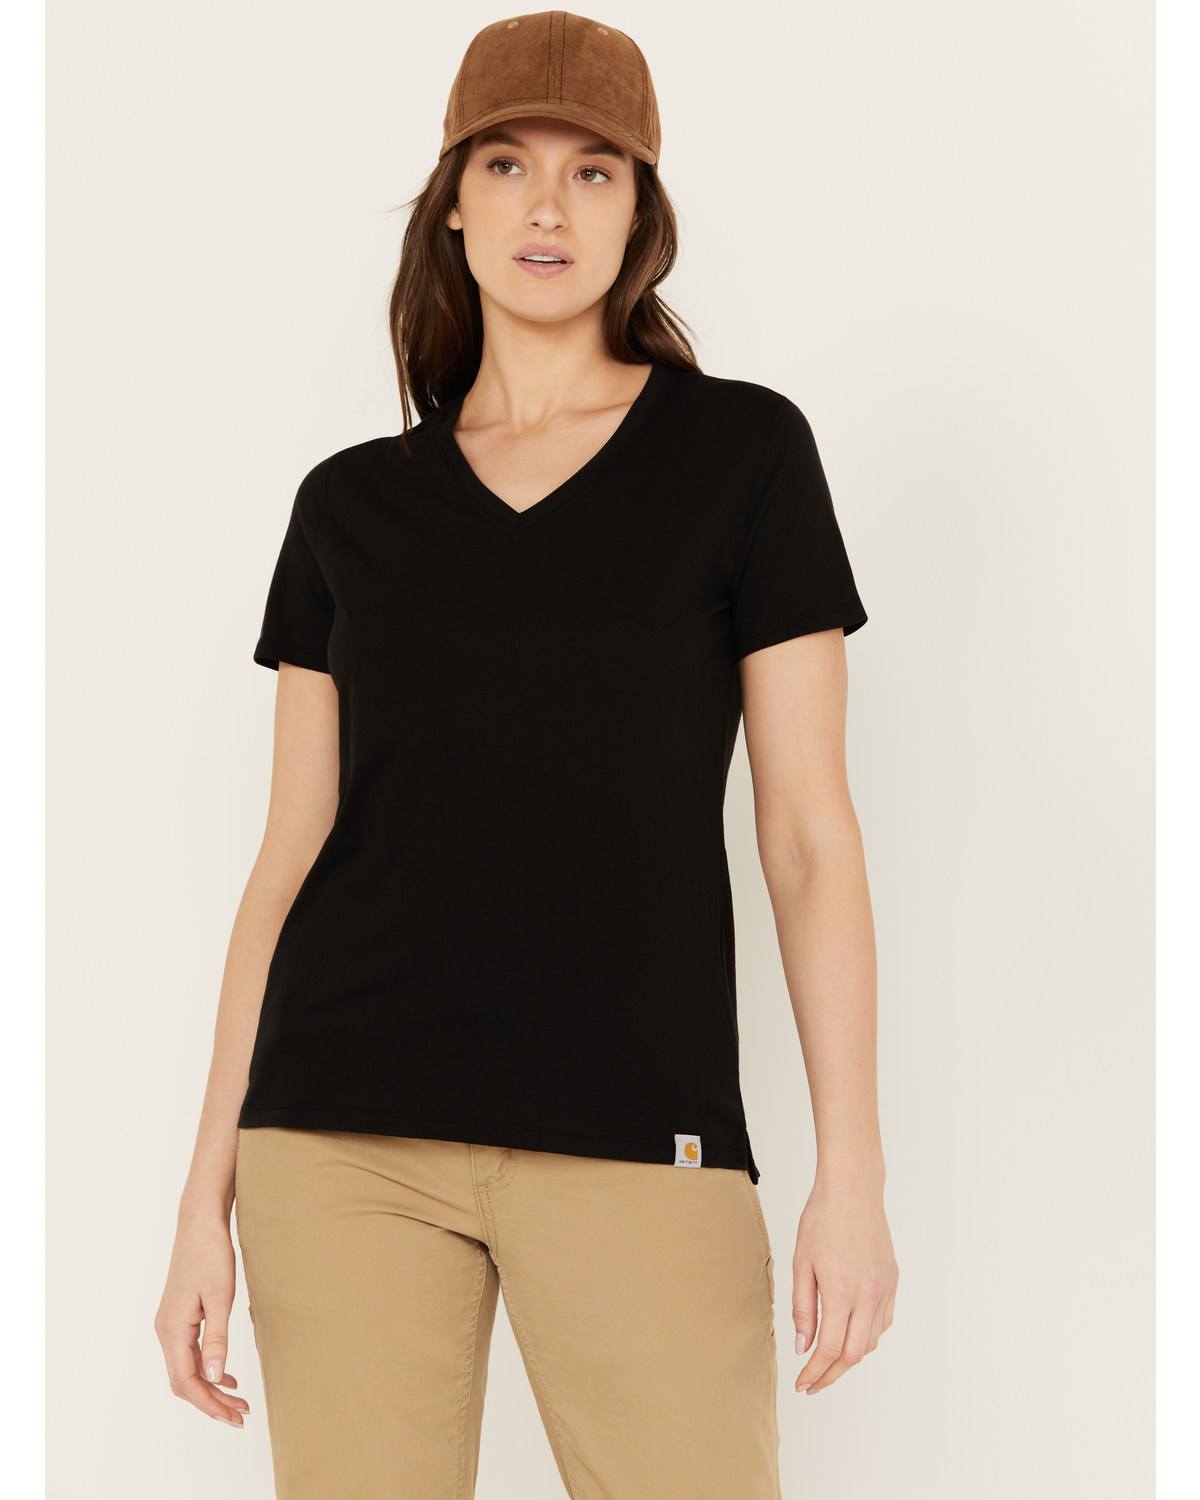 Carhartt Women's Relaxed Fit Lightweight Short Sleeve V Neck T-Shirt